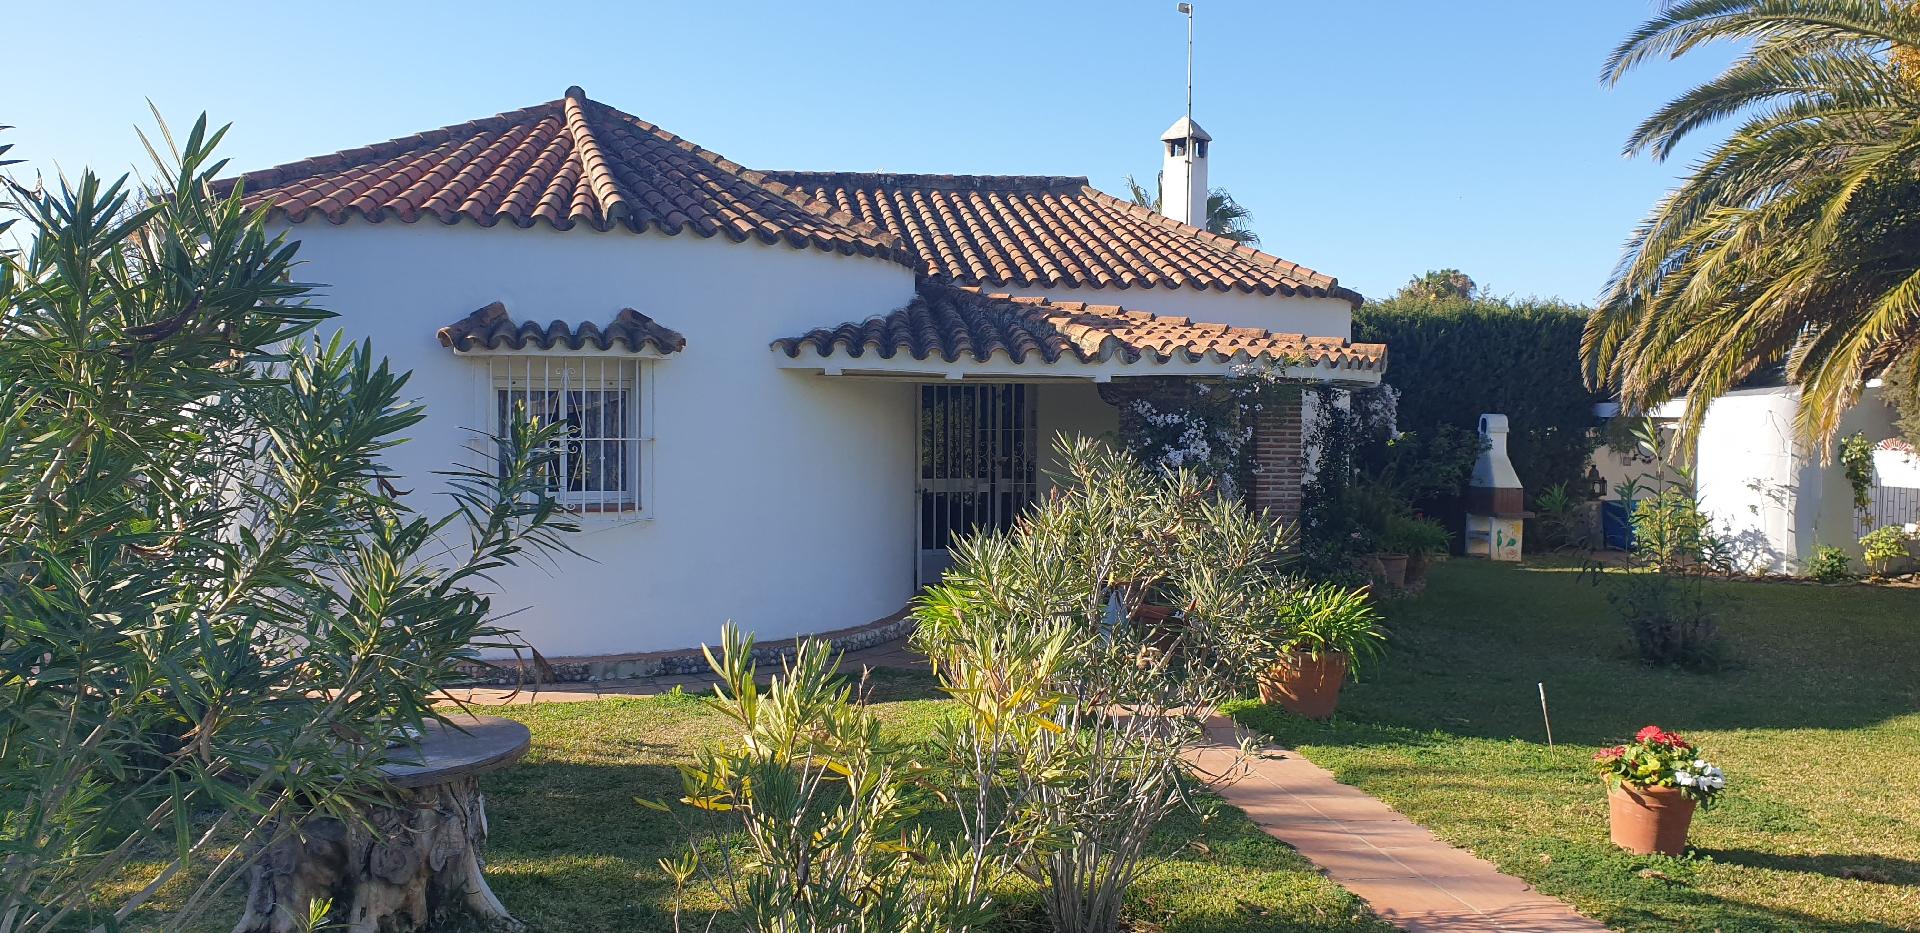 Gemütliches Ferienhaus mit schöner Loggi Ferienhaus in Spanien